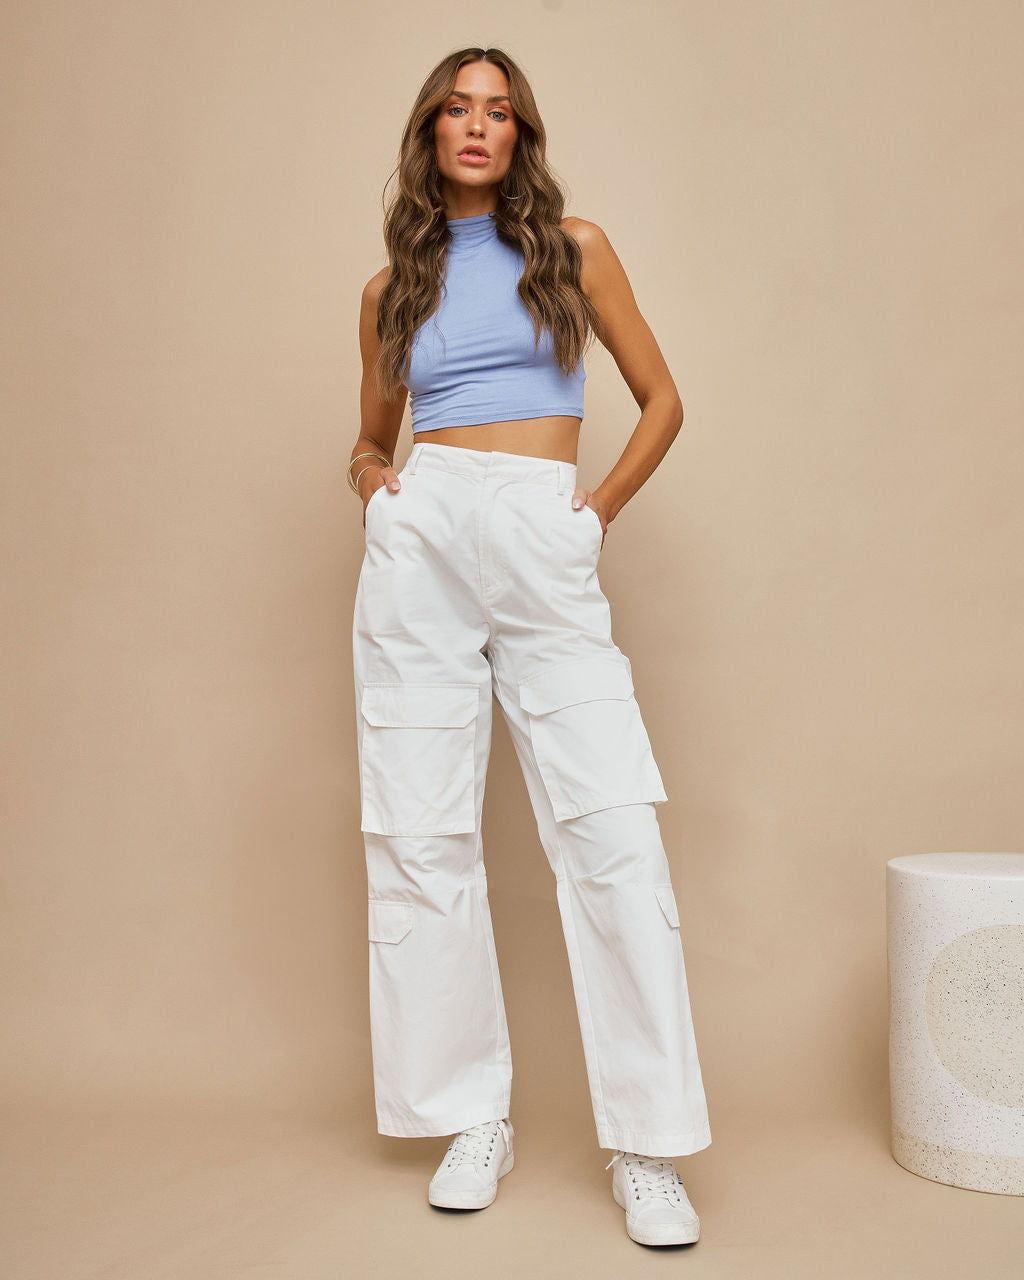 Style White Cargo Pants, White Cargo Pants Women